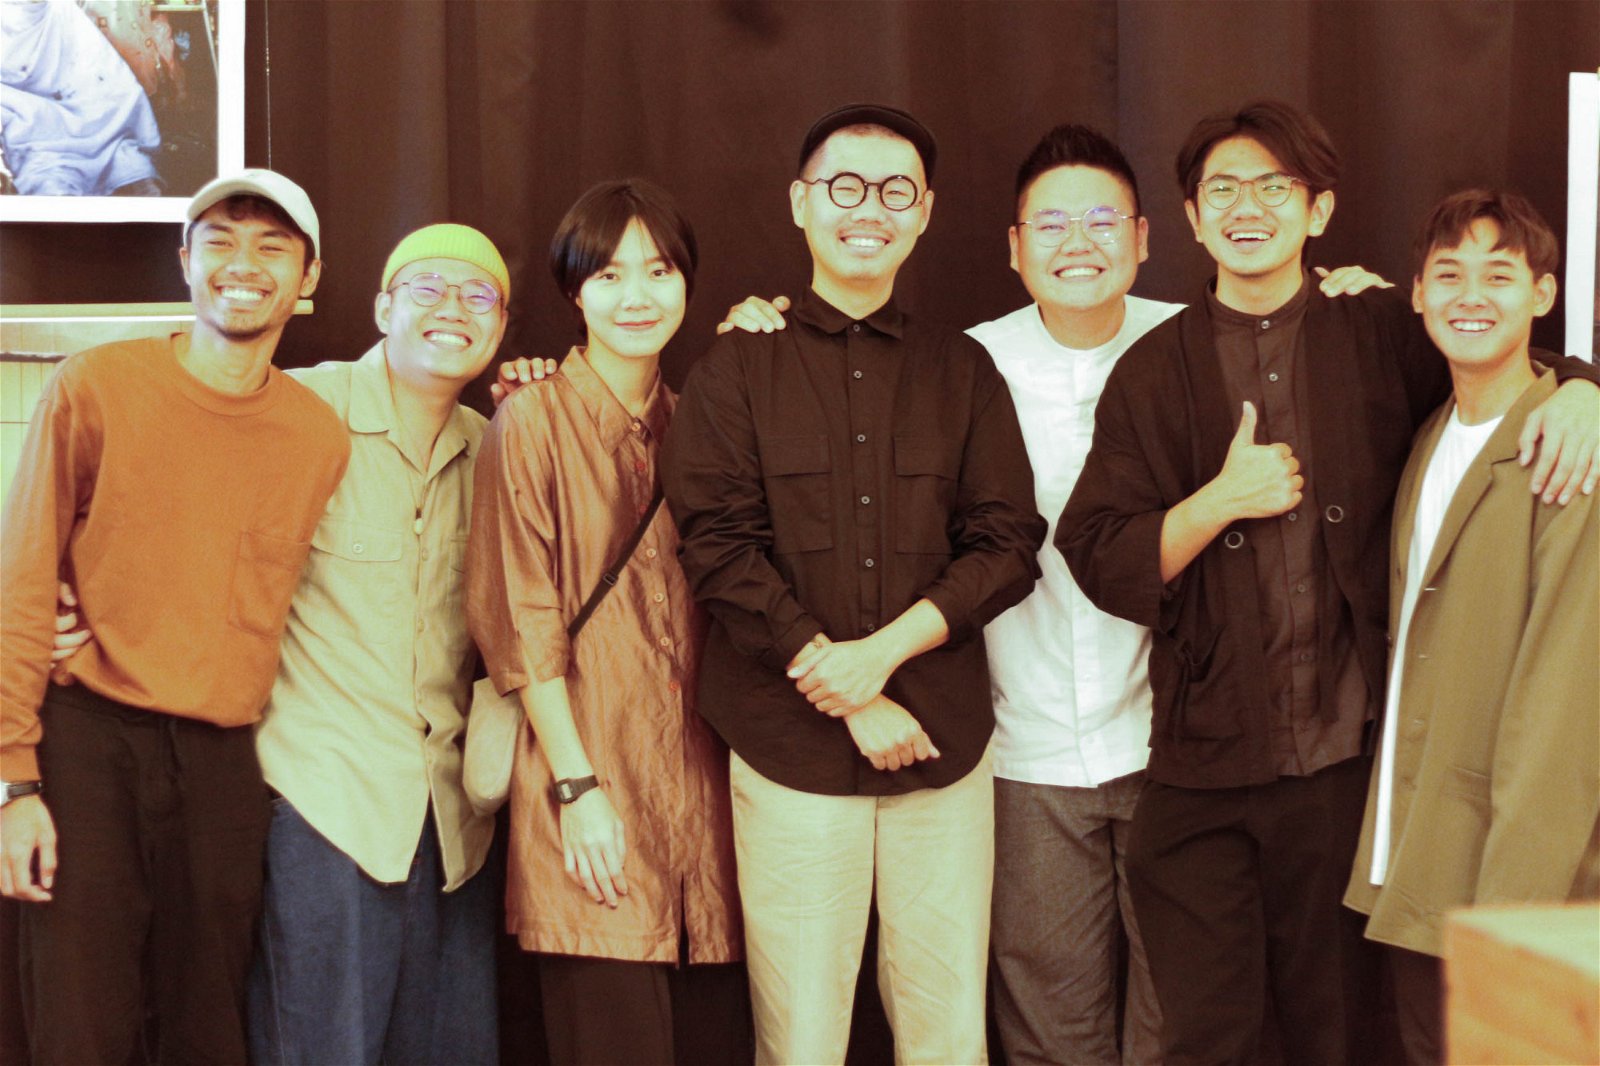 由8名专业摄影师组成的团队筹办了展期为一个月的《关于峇株故事》摄影展，左为莫哈末哈里斯。